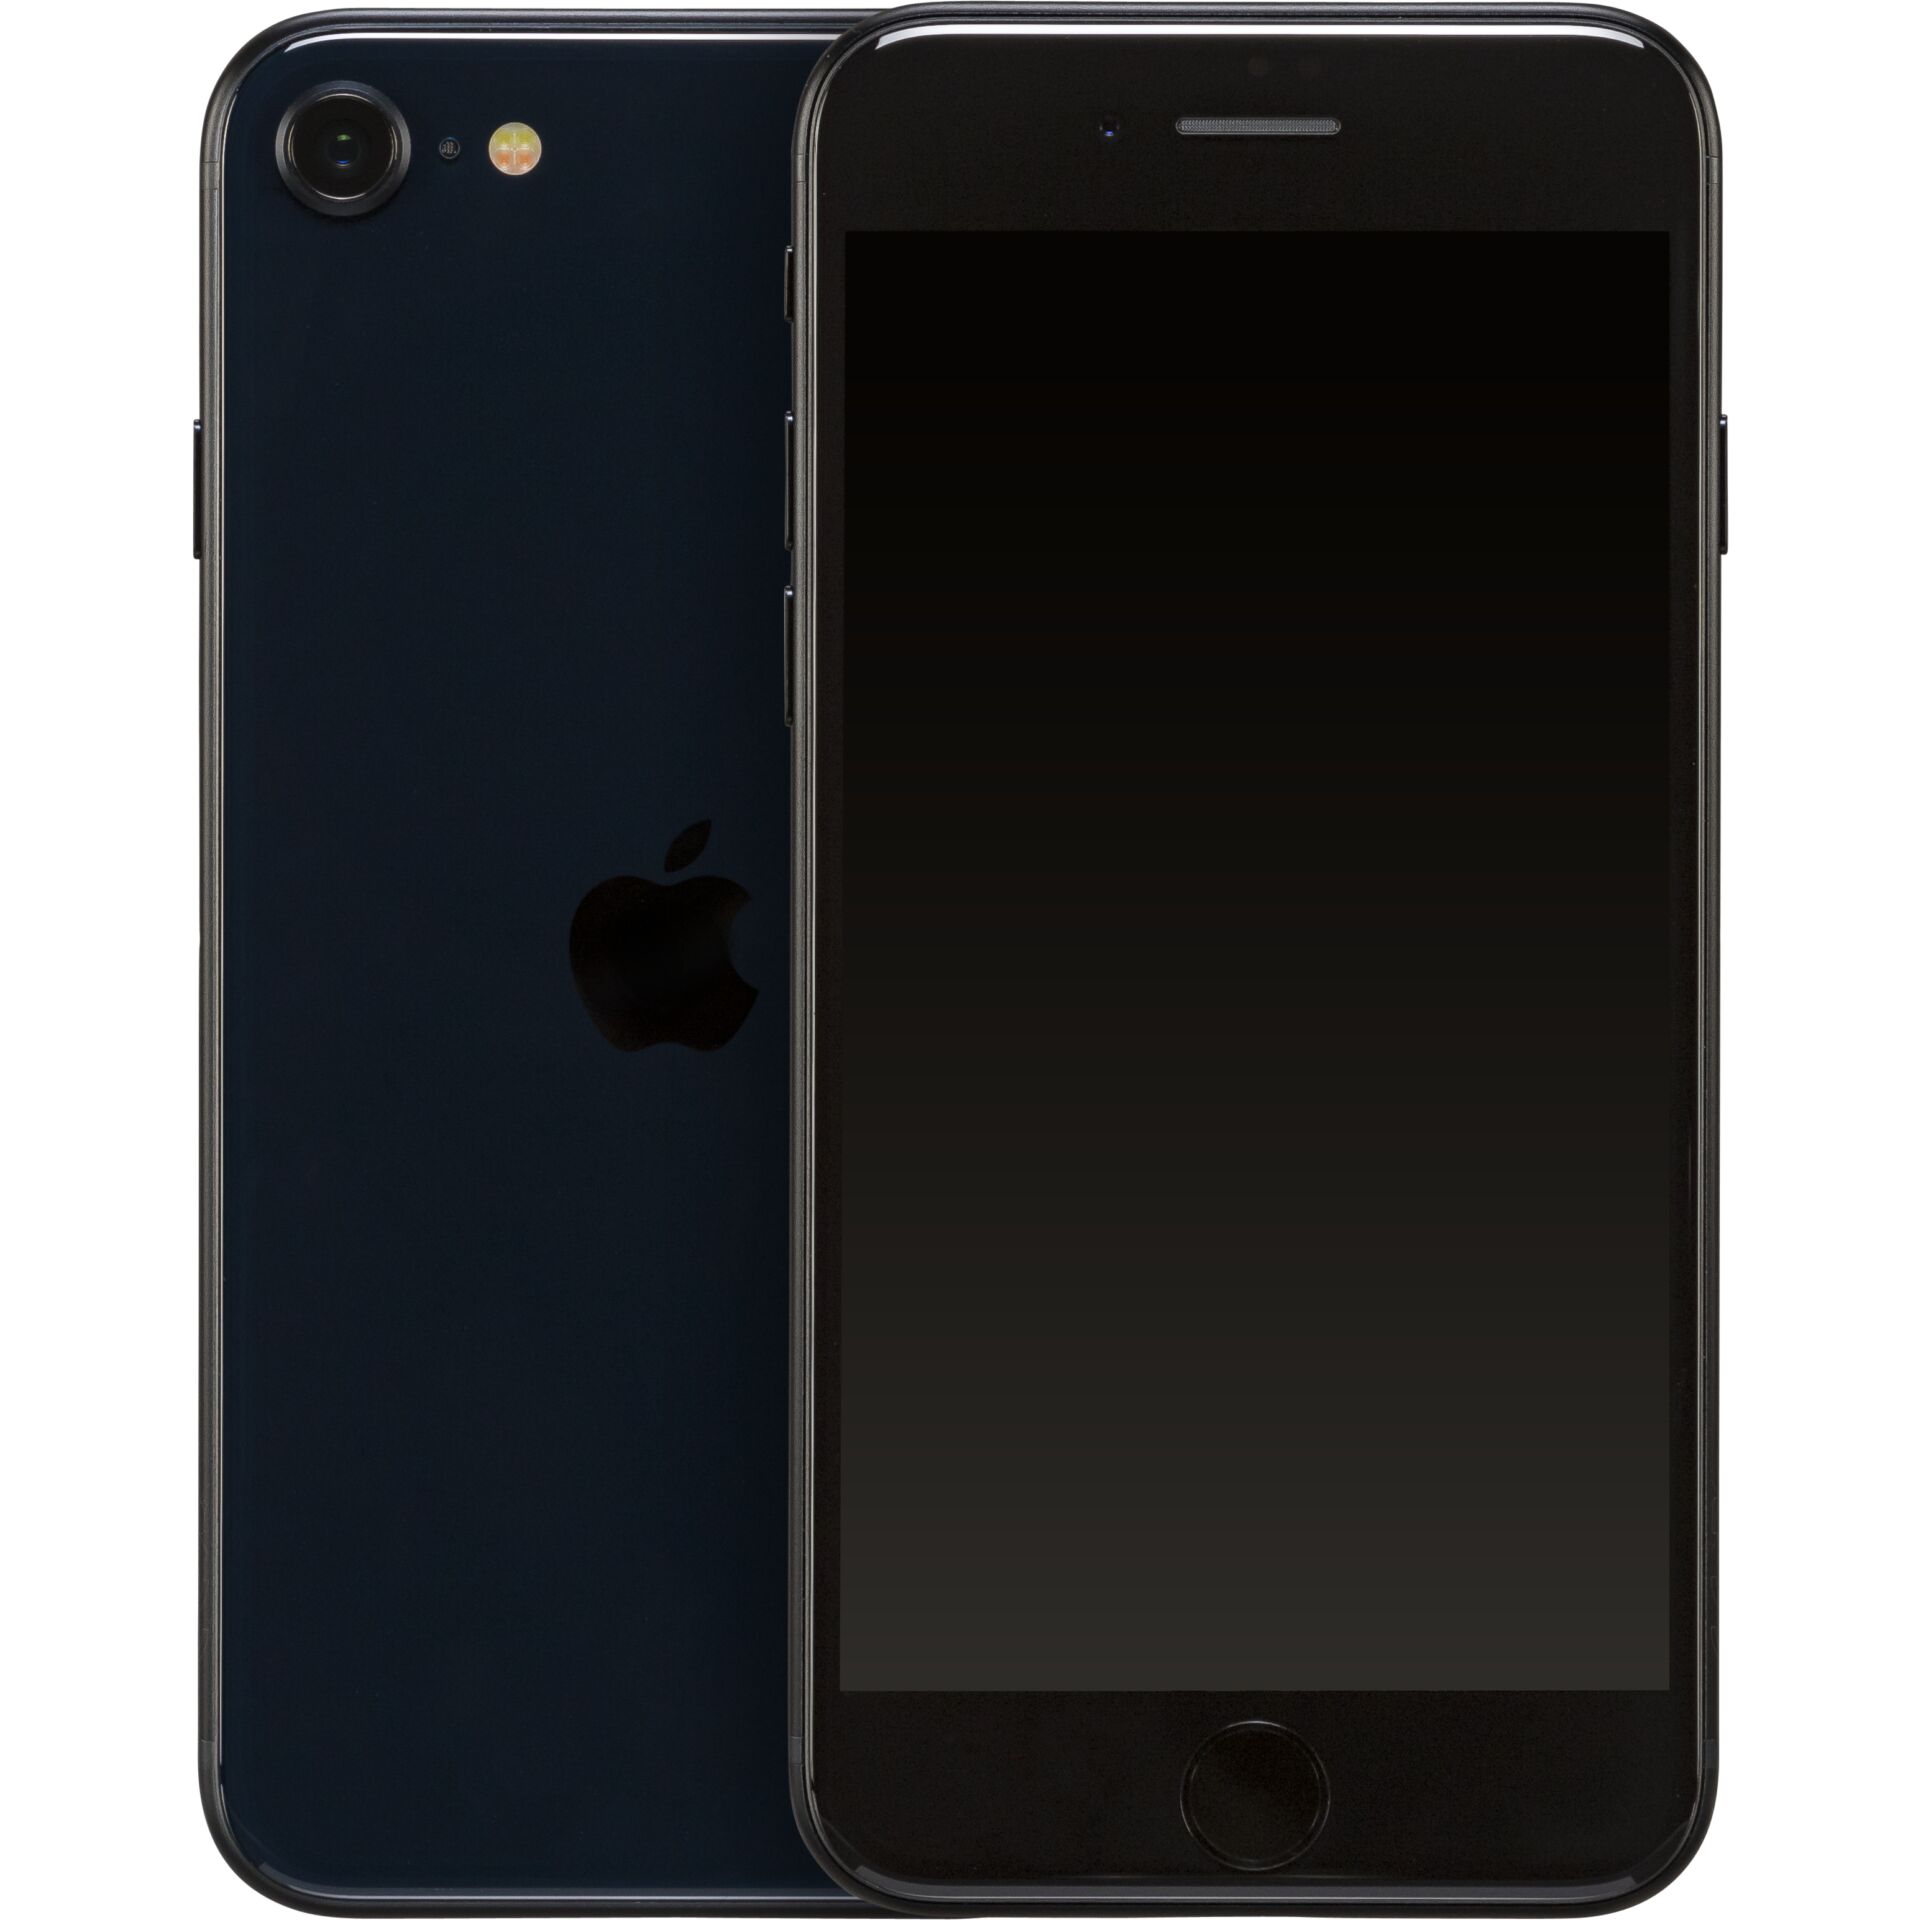 Apple iPhone SE 11,9 cm (4.7) Dual-SIM iOS 15 5G 256 GB Schwarz